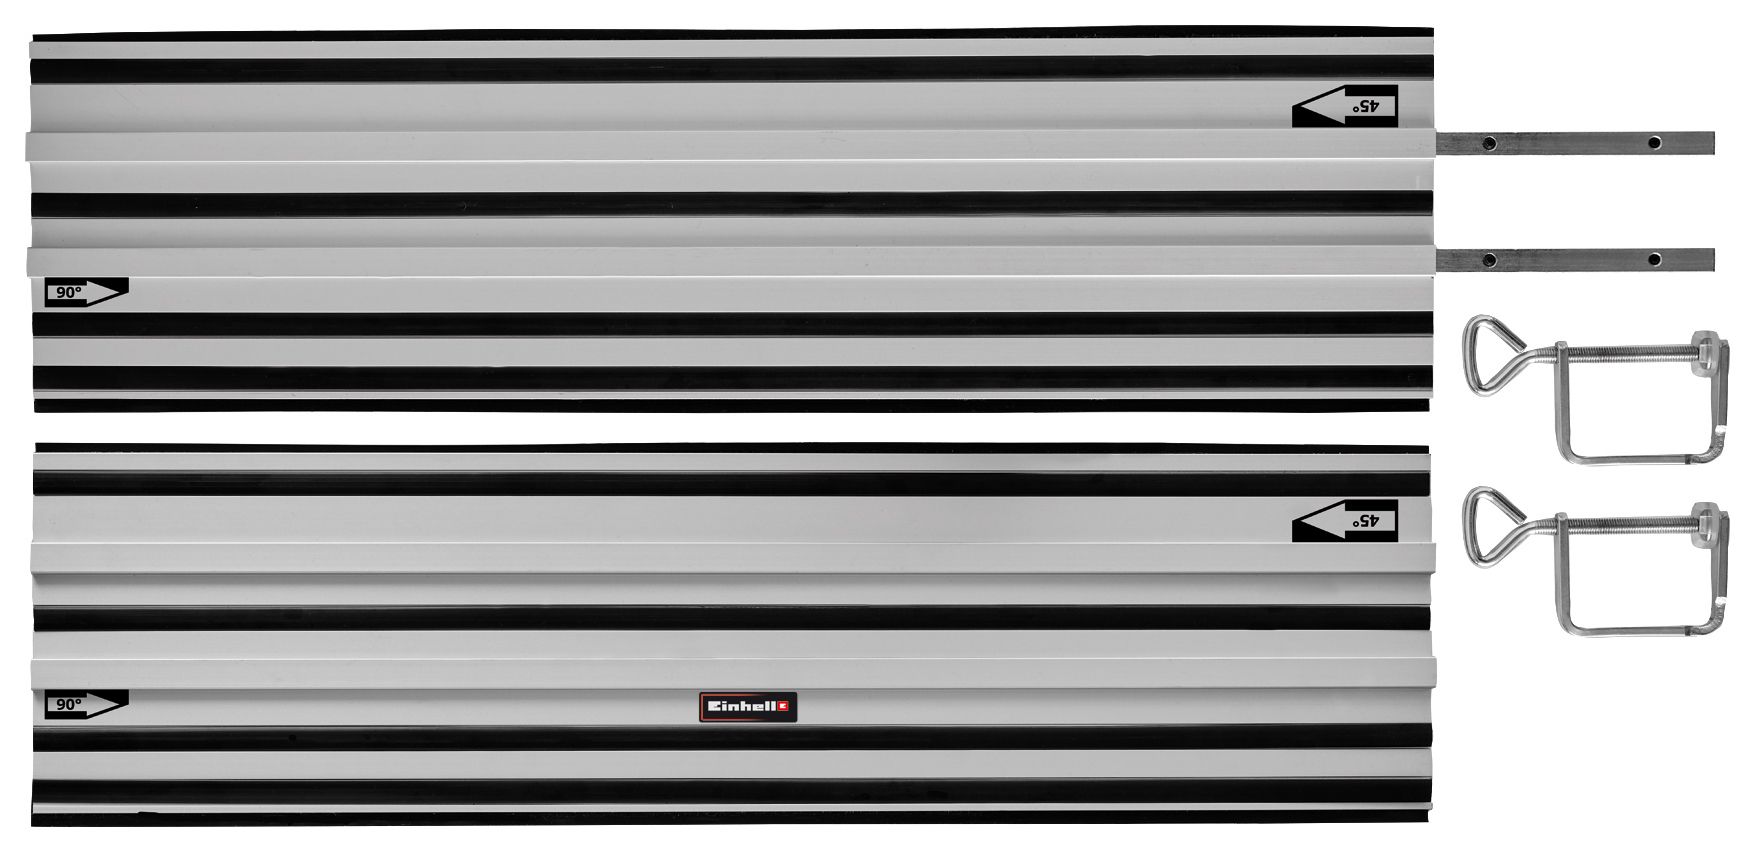 Einhell Expert Aluminium Guide Rail Saw Accessory - 2 x 1000mm